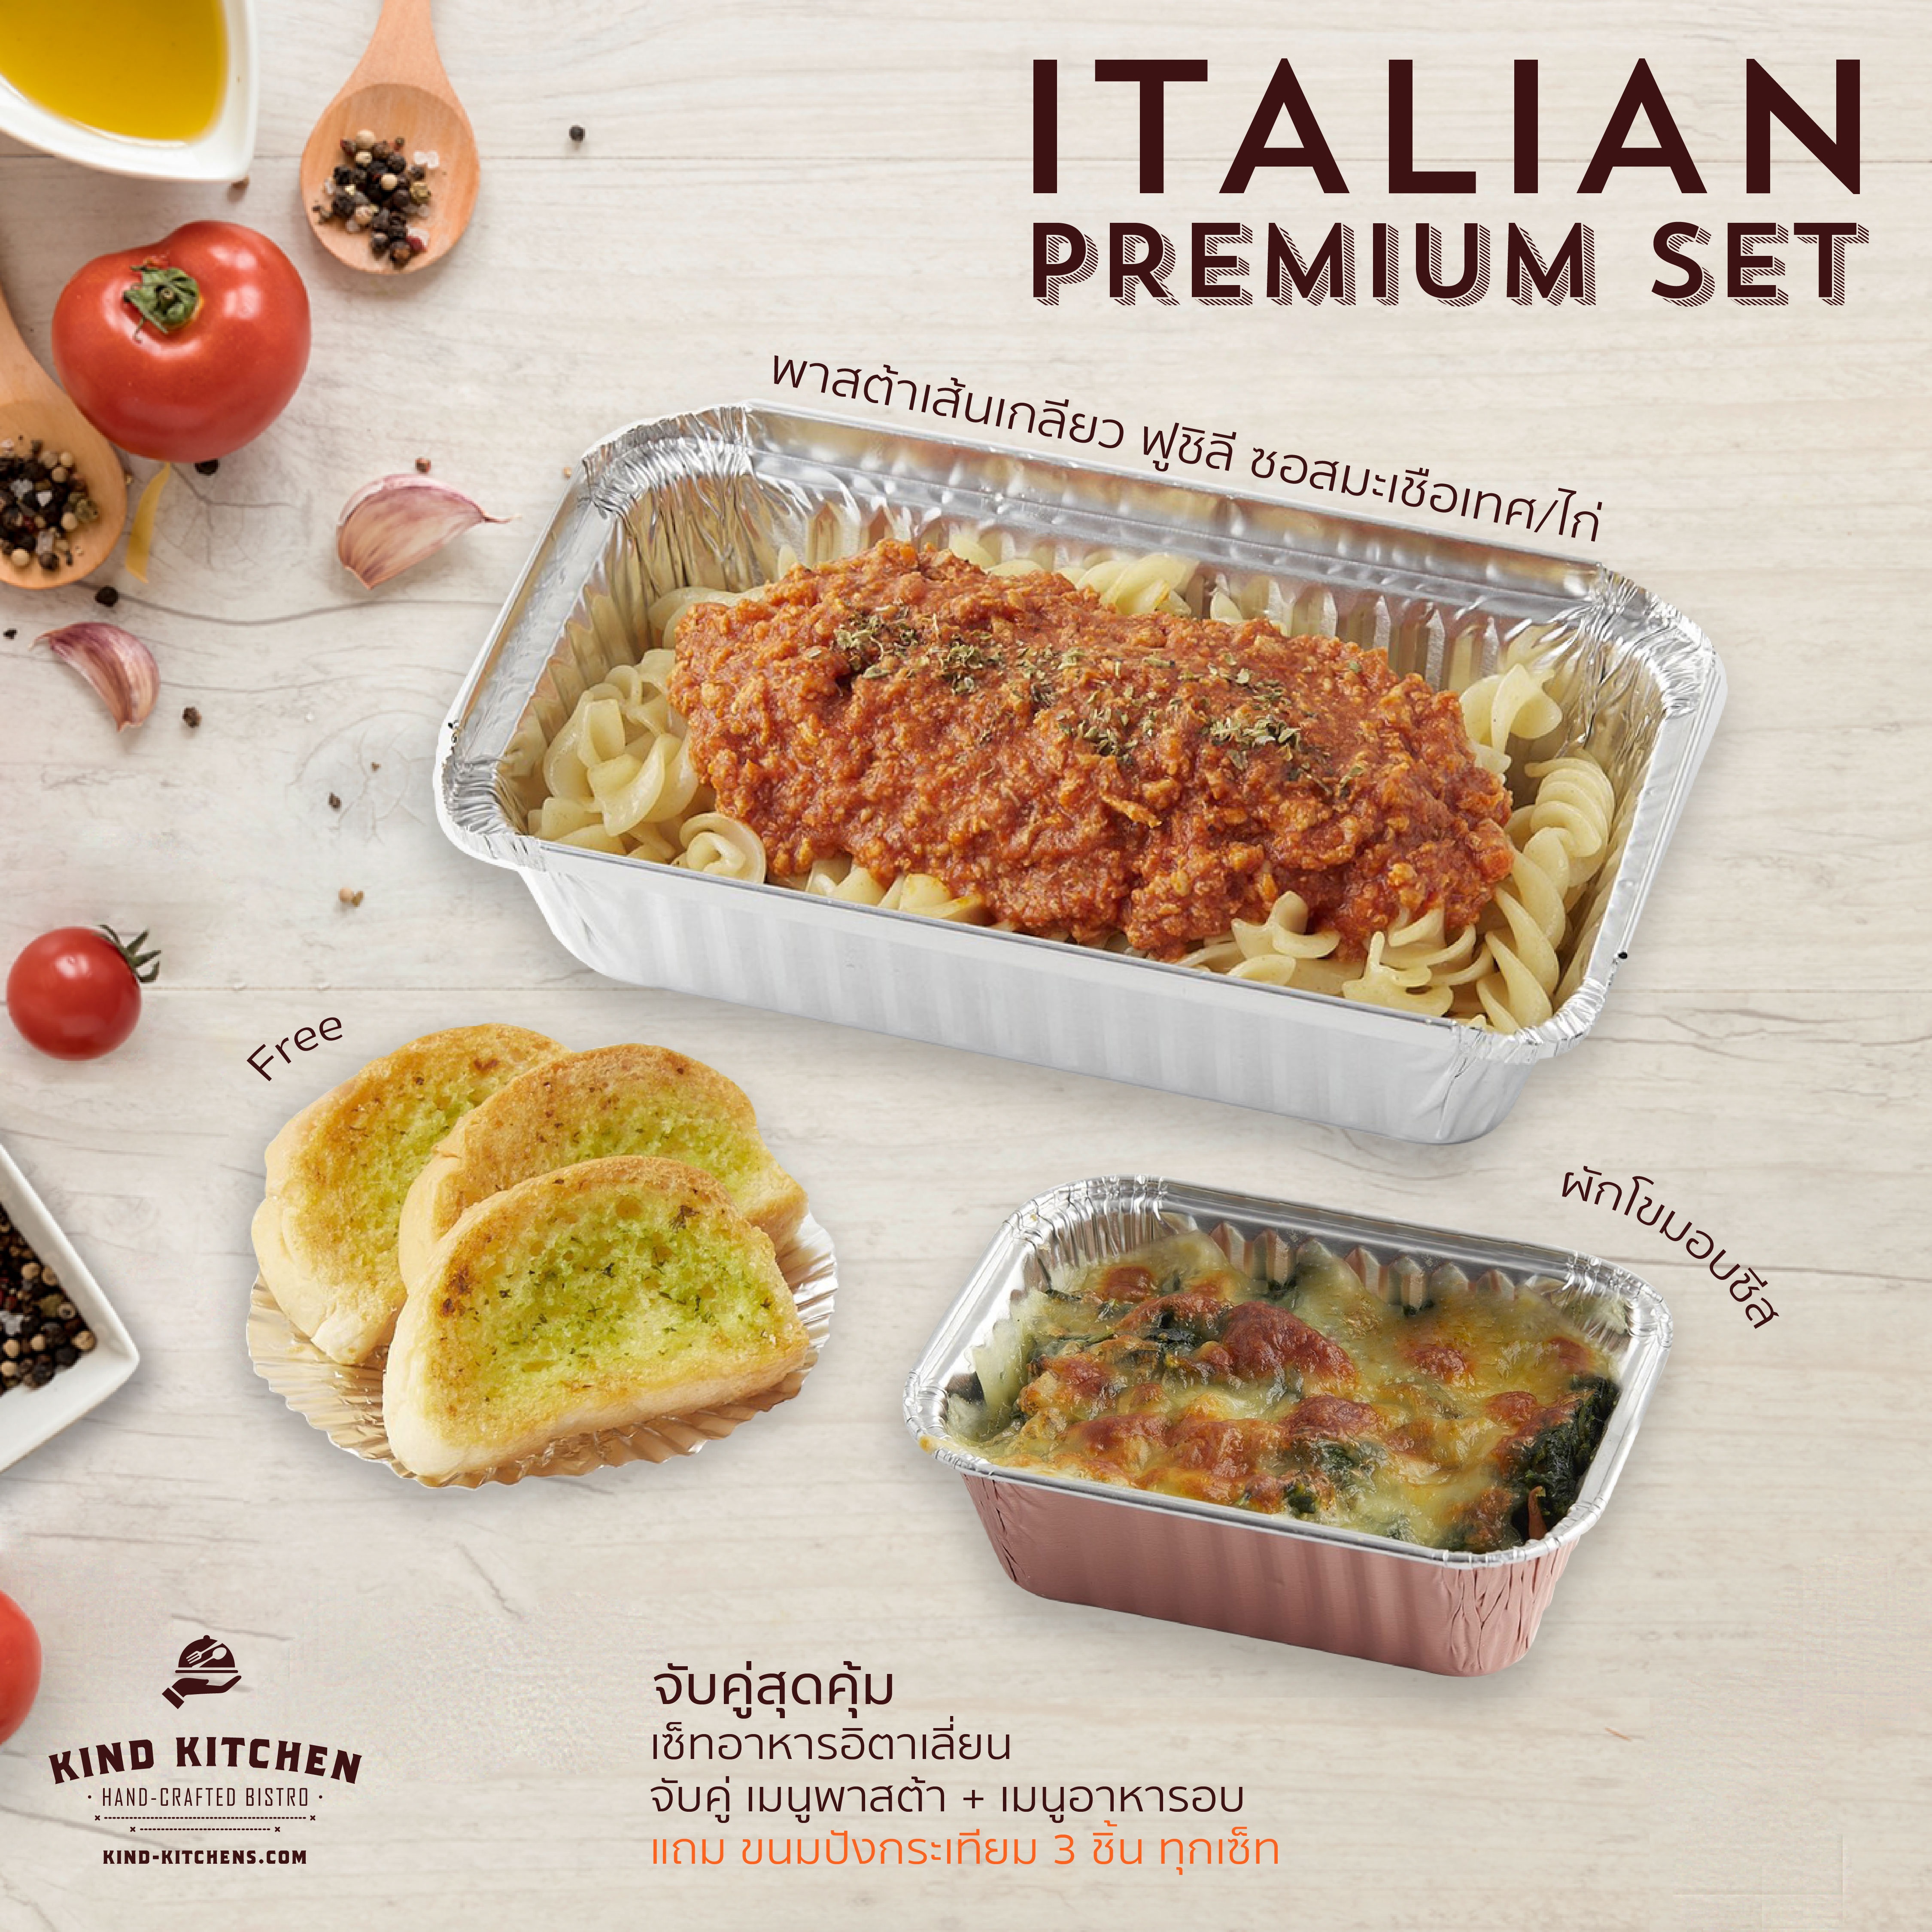 เซ็ทอาหารอิตาเลี่ยน Italian Premium Set_พาสต้าเส้นเกลียว ฟูชิลี ซอสมะเขือเทศ/ไก่ + ผักโขมอบชีส